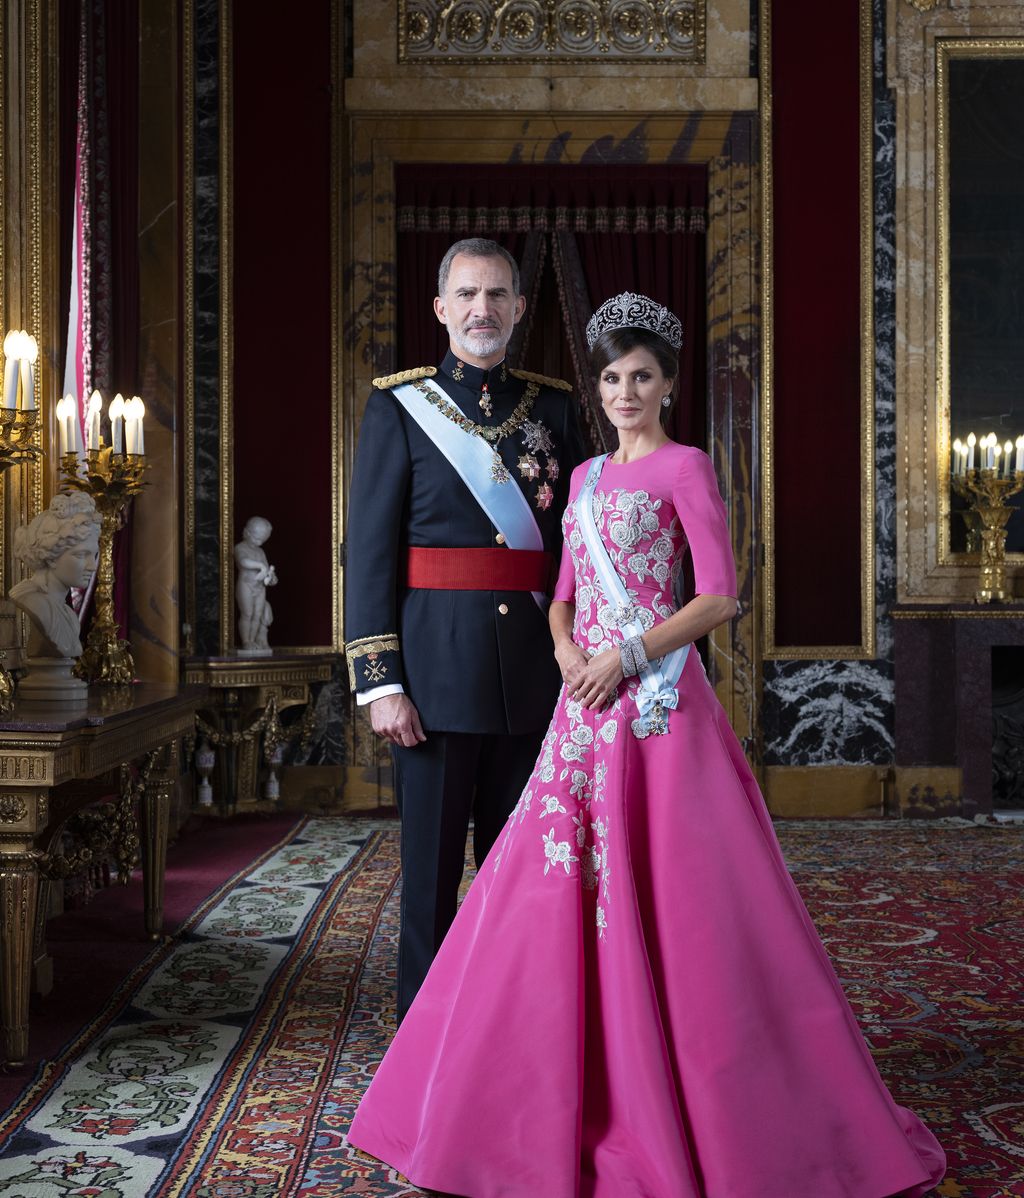 Fotografías oficiales de Sus Majestades los Reyes y Sus Altezas Reales la Princesa de Asturias y la Infanta Doña Sofía